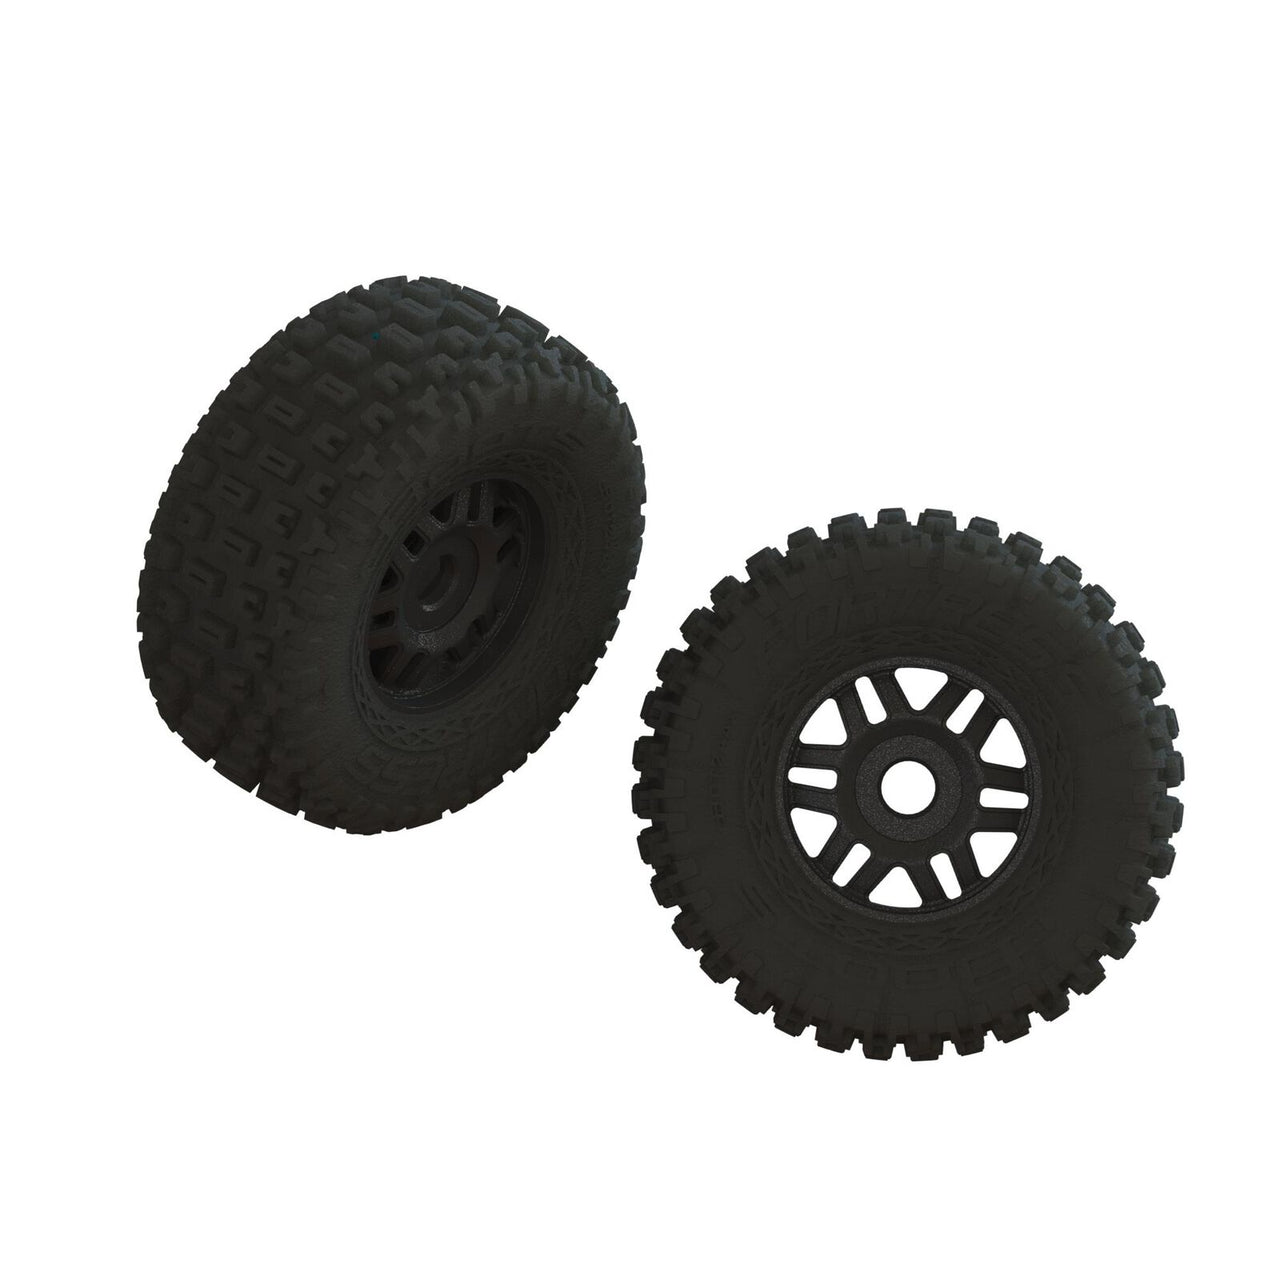 ARA550110 Jeu de pneus dBoots FORTRESS LP collés noirs (1 paire)